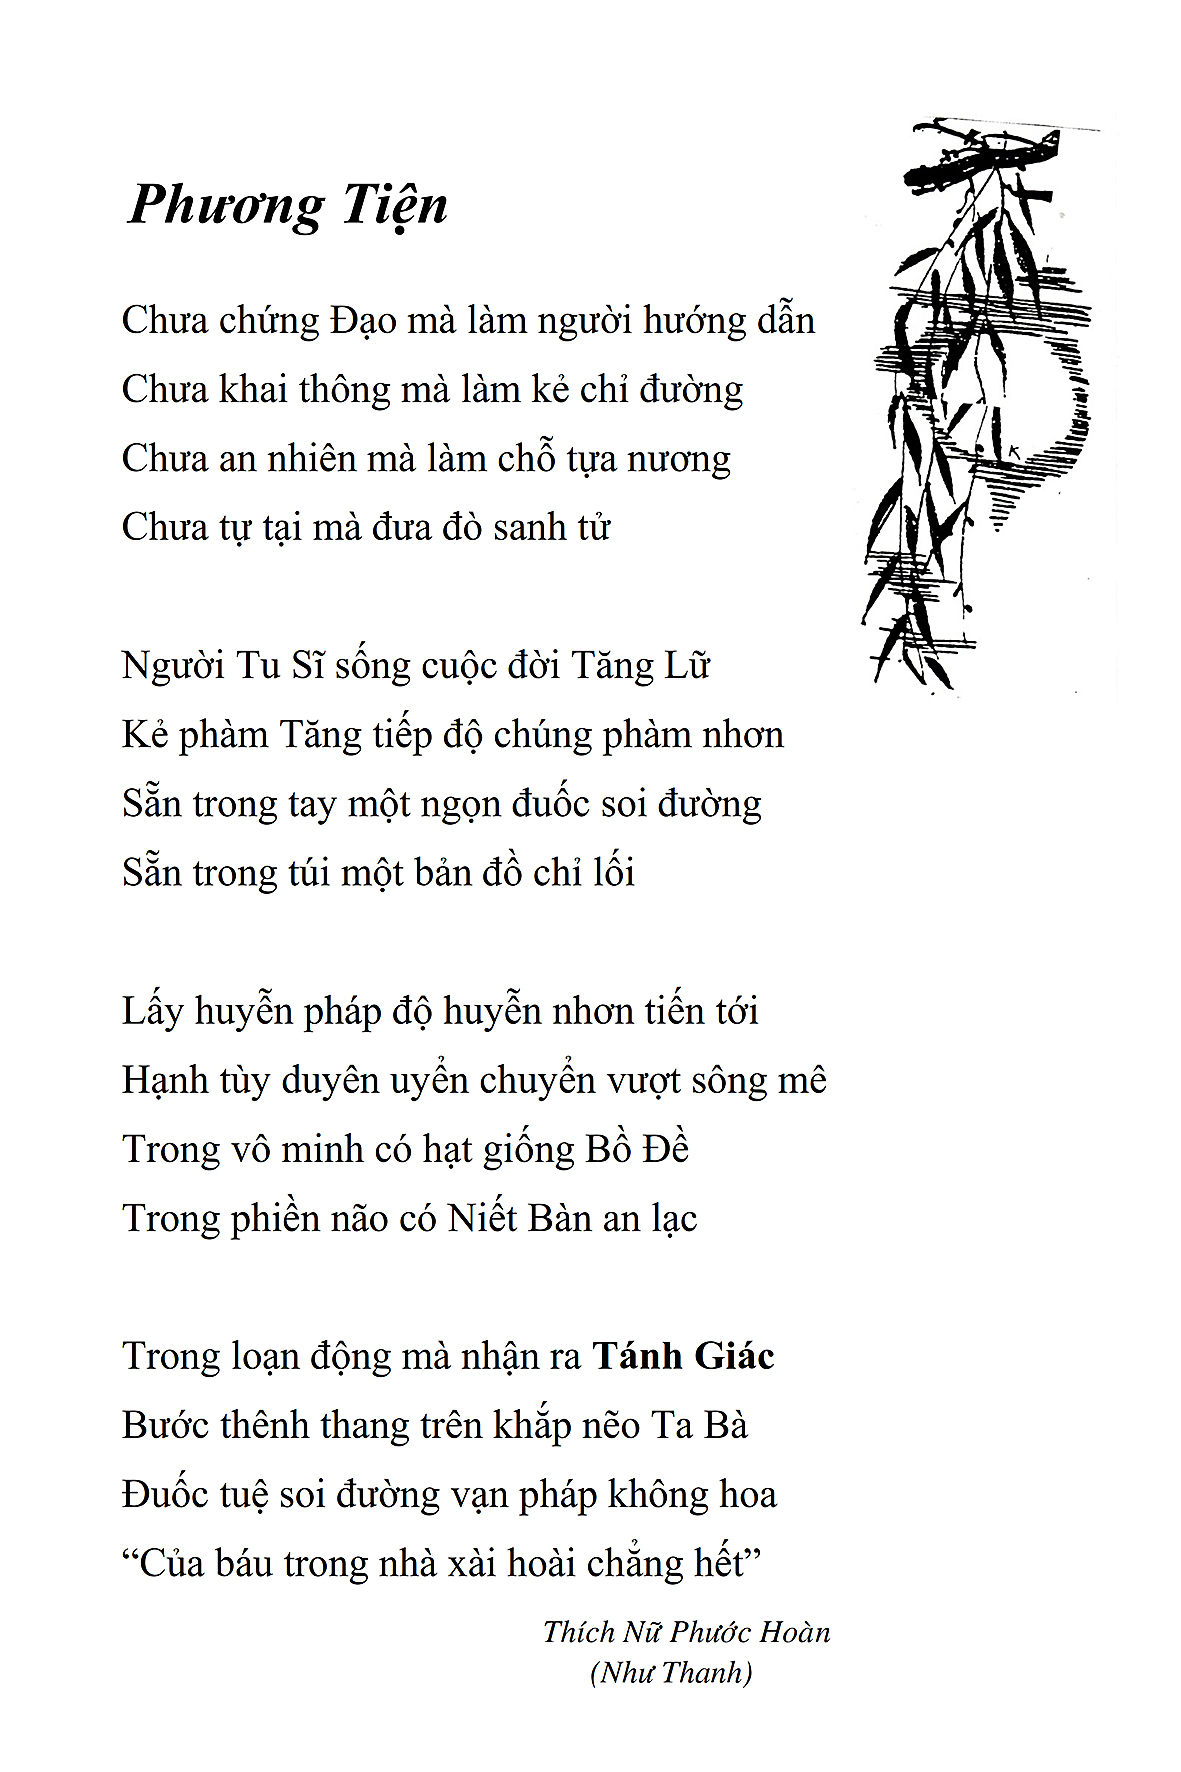 Phuong Tien